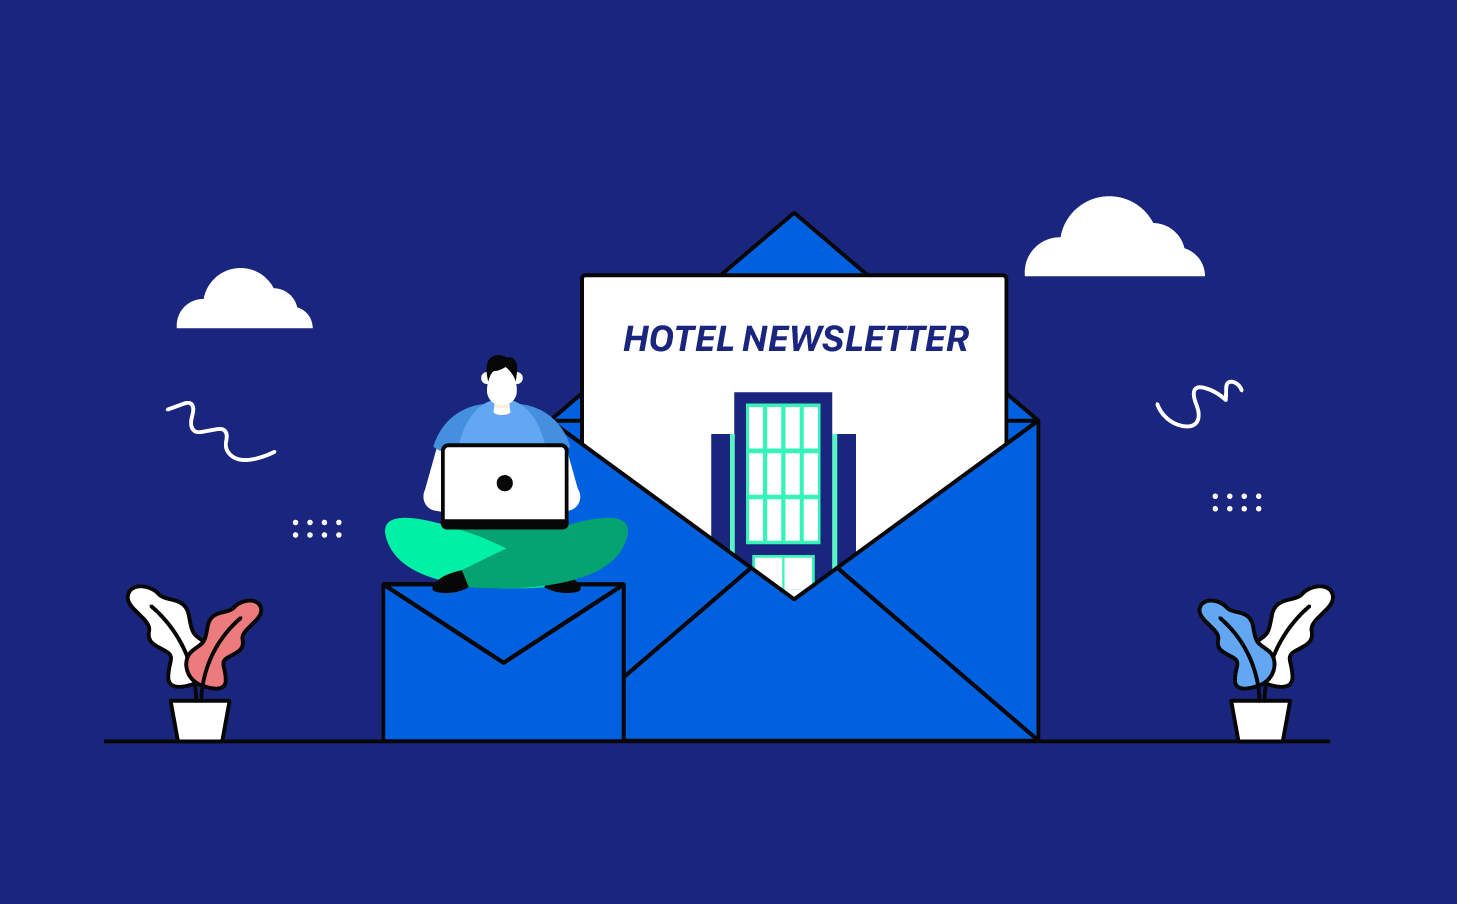 Οδηγίες για τη δημιουργία πετυχημένης στρατηγικής e - mail marketing για ξενοδοχεία και άλλα τουριστικά καταλύματα.